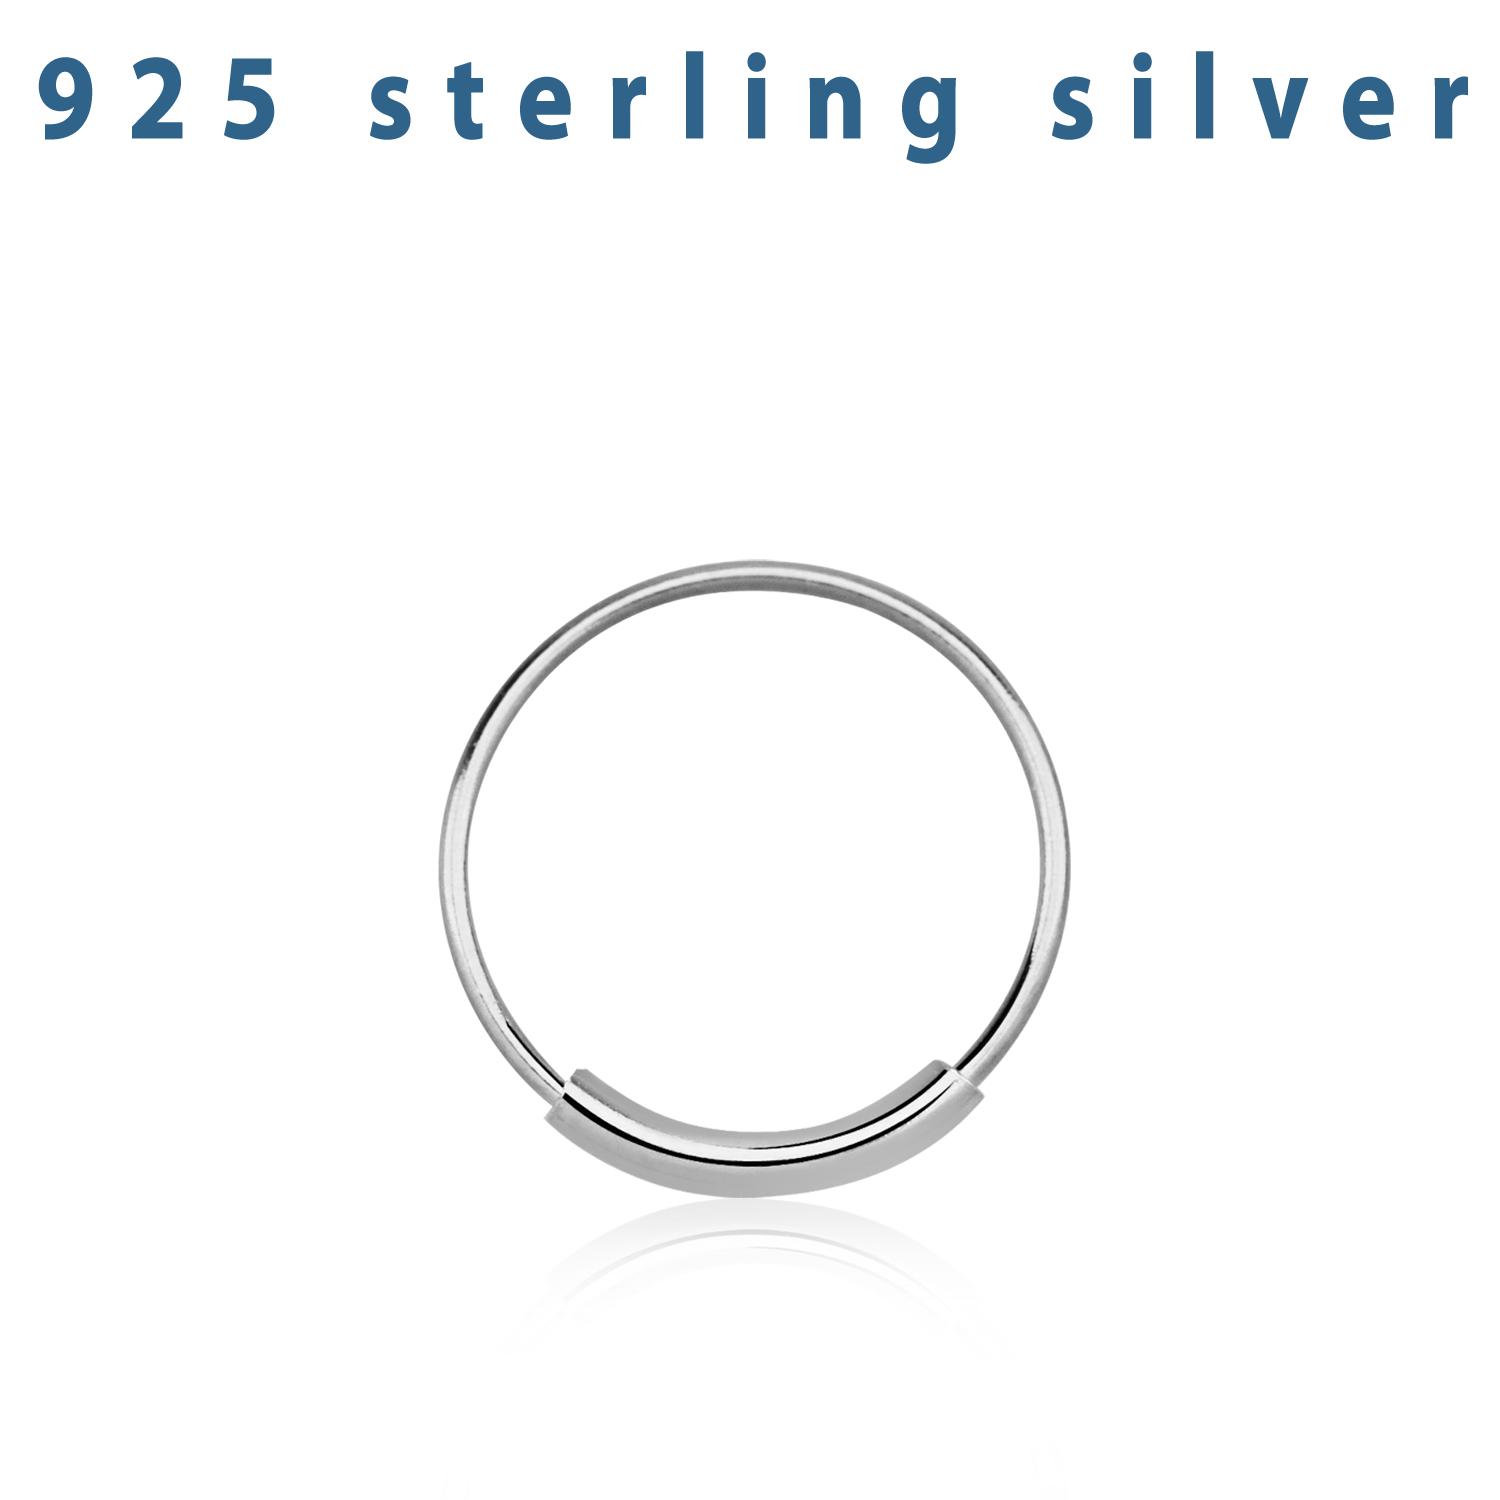 Näsring / sömlös ring i 925 silver 12mm